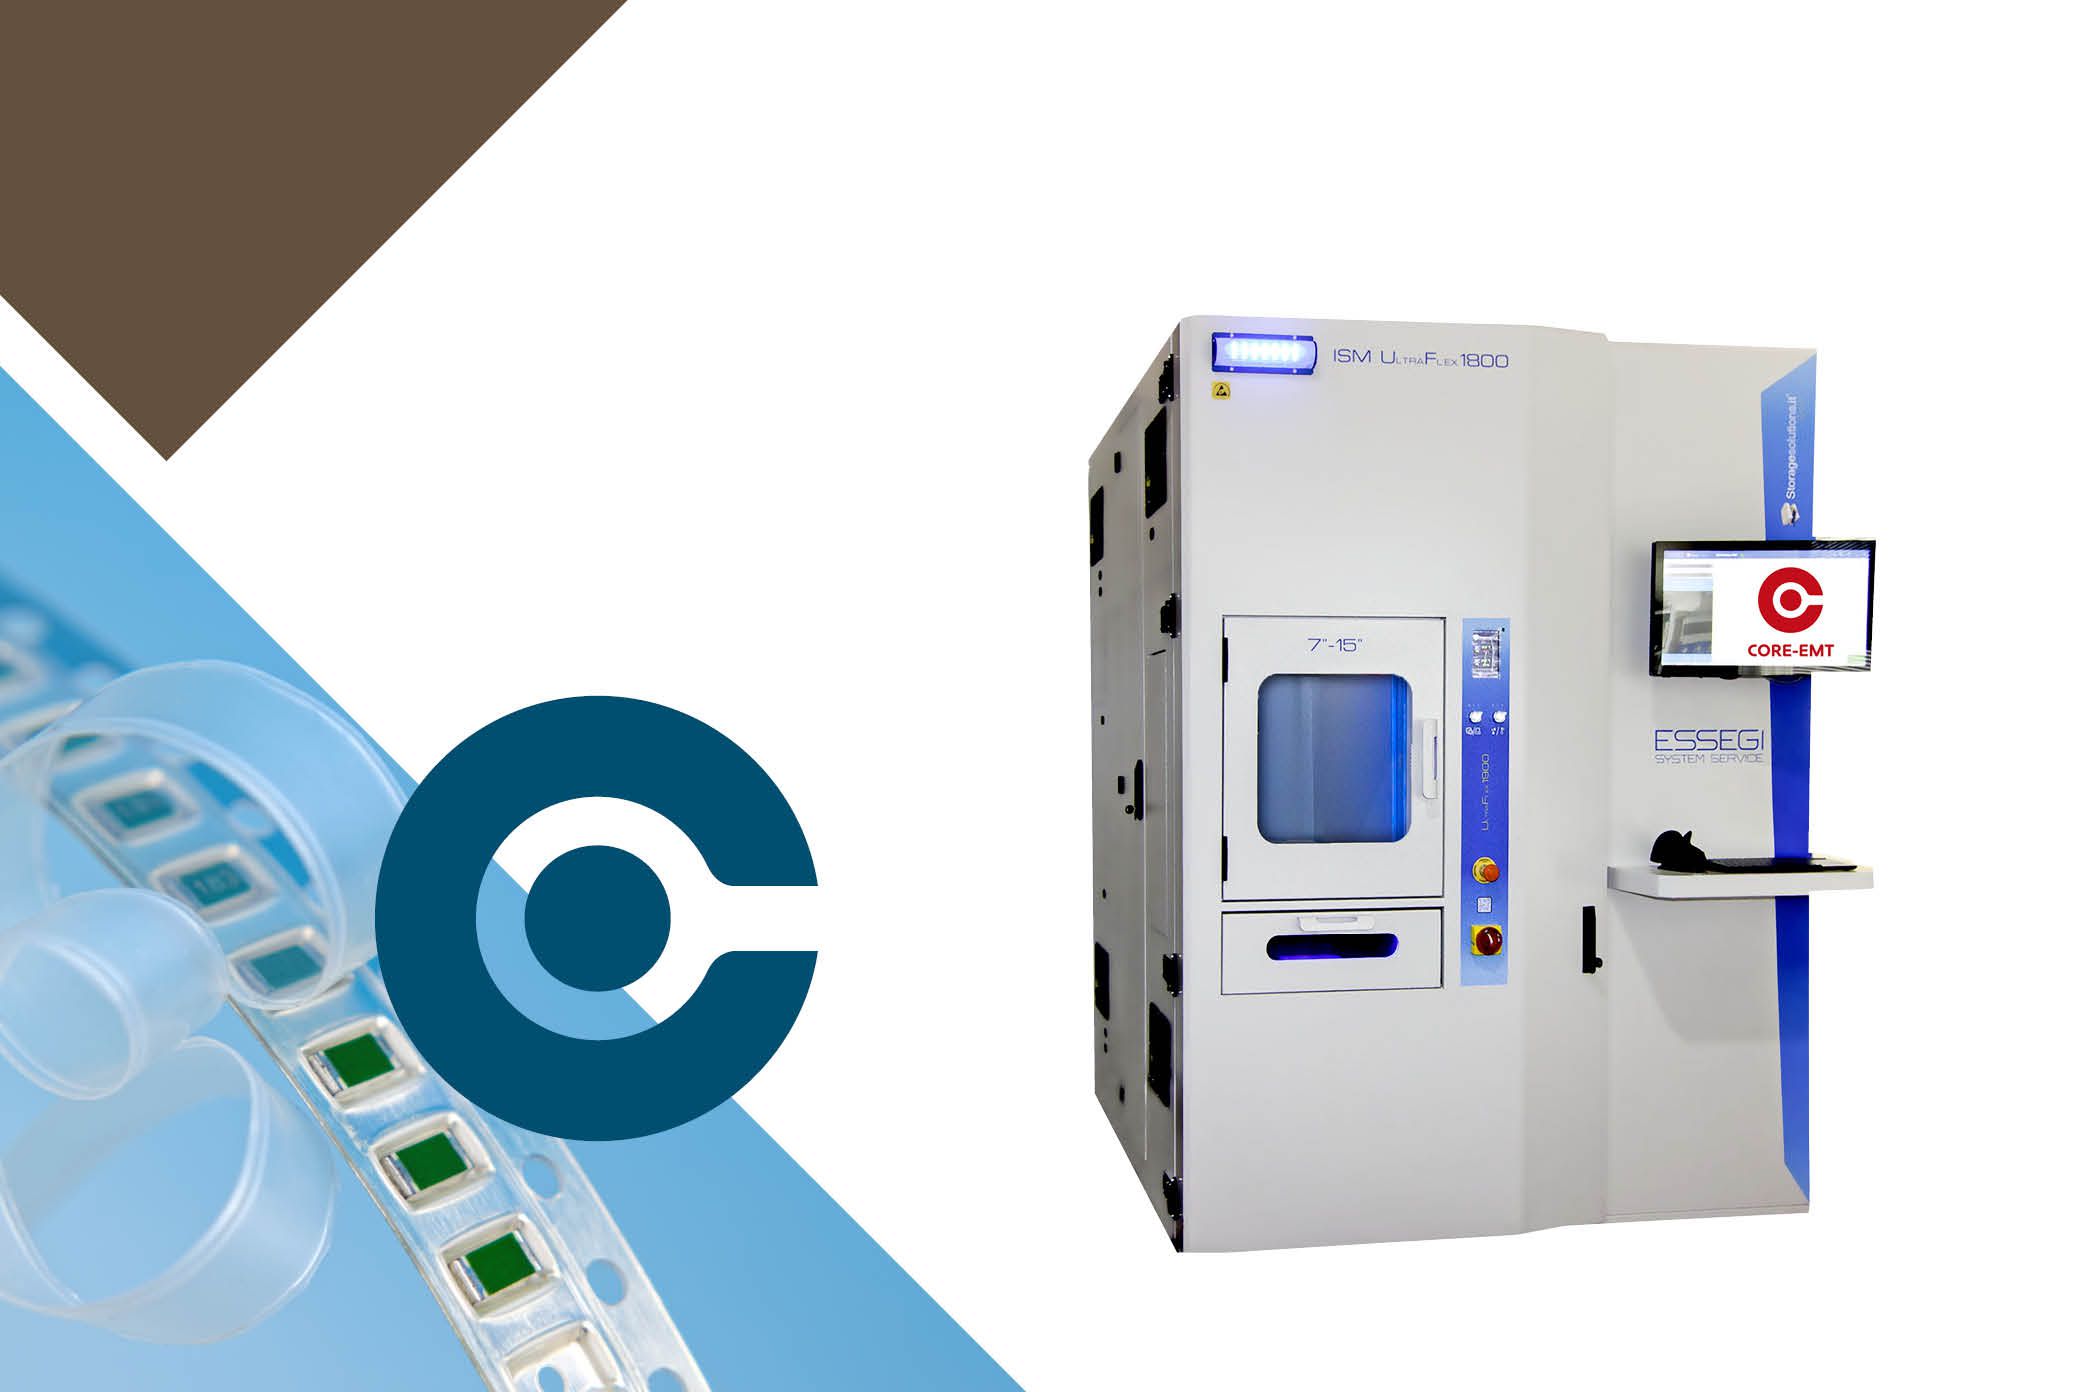 ISM 1800 ultraflex SMD Storage solutions machine from essegi